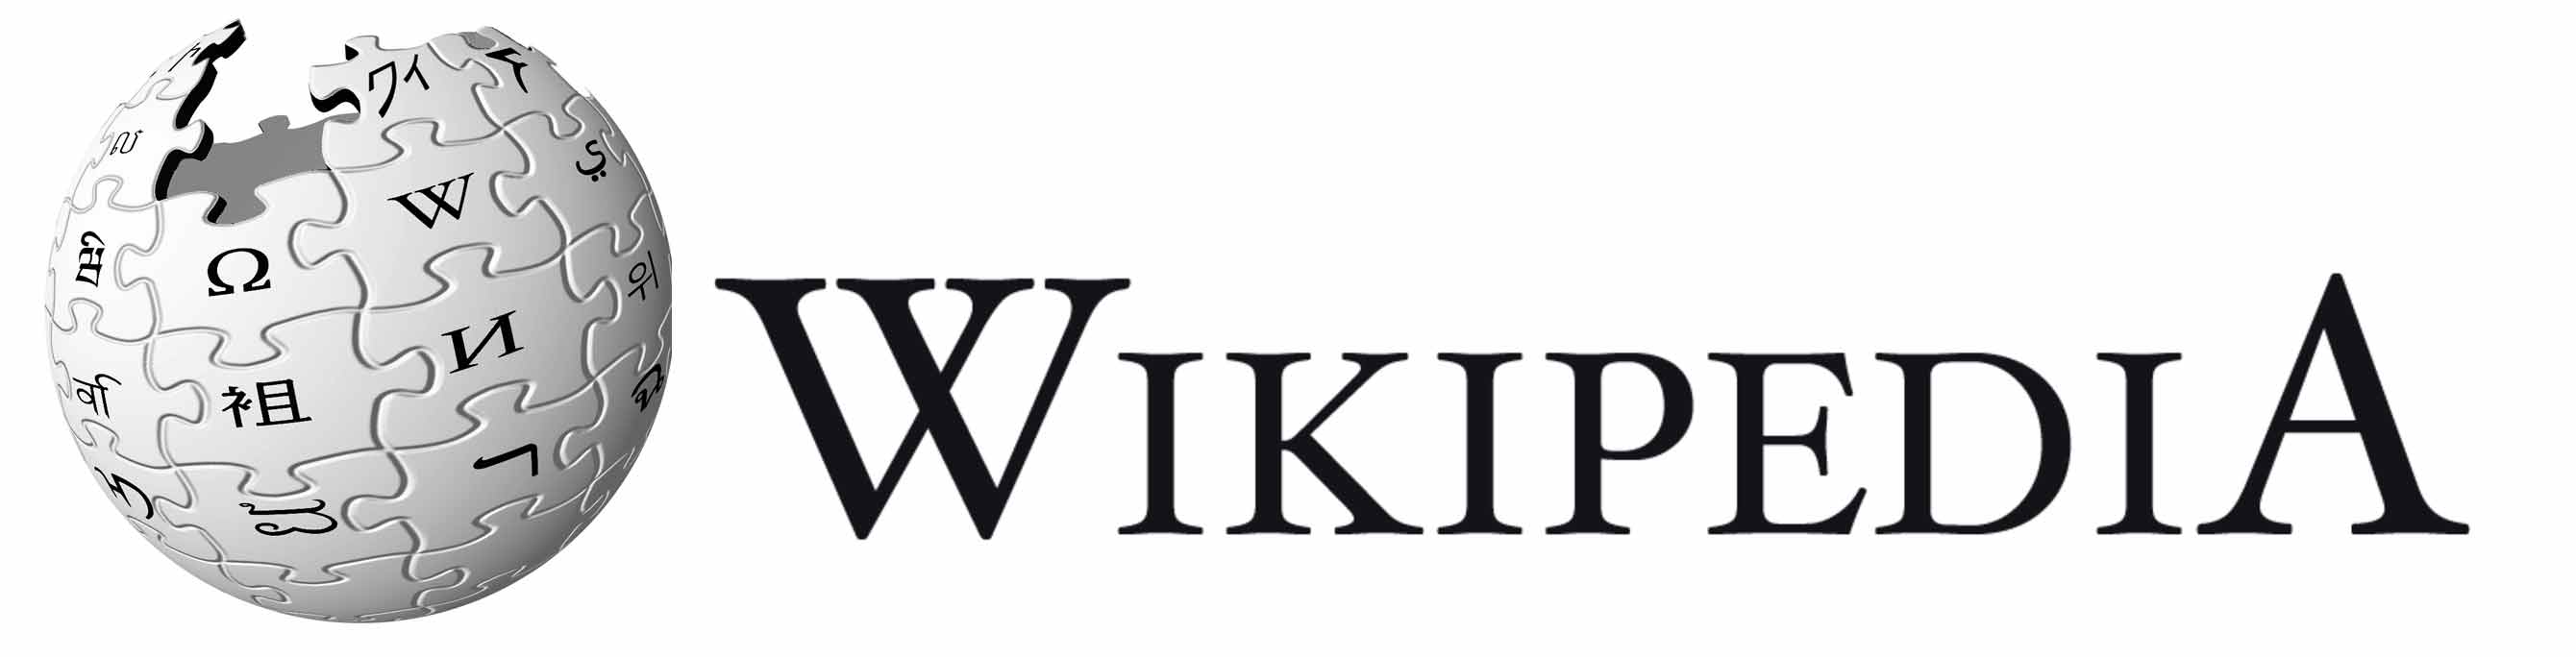 دانلود نرم افزار Wikipedia 5.1.0 برای اندروید و آیفون